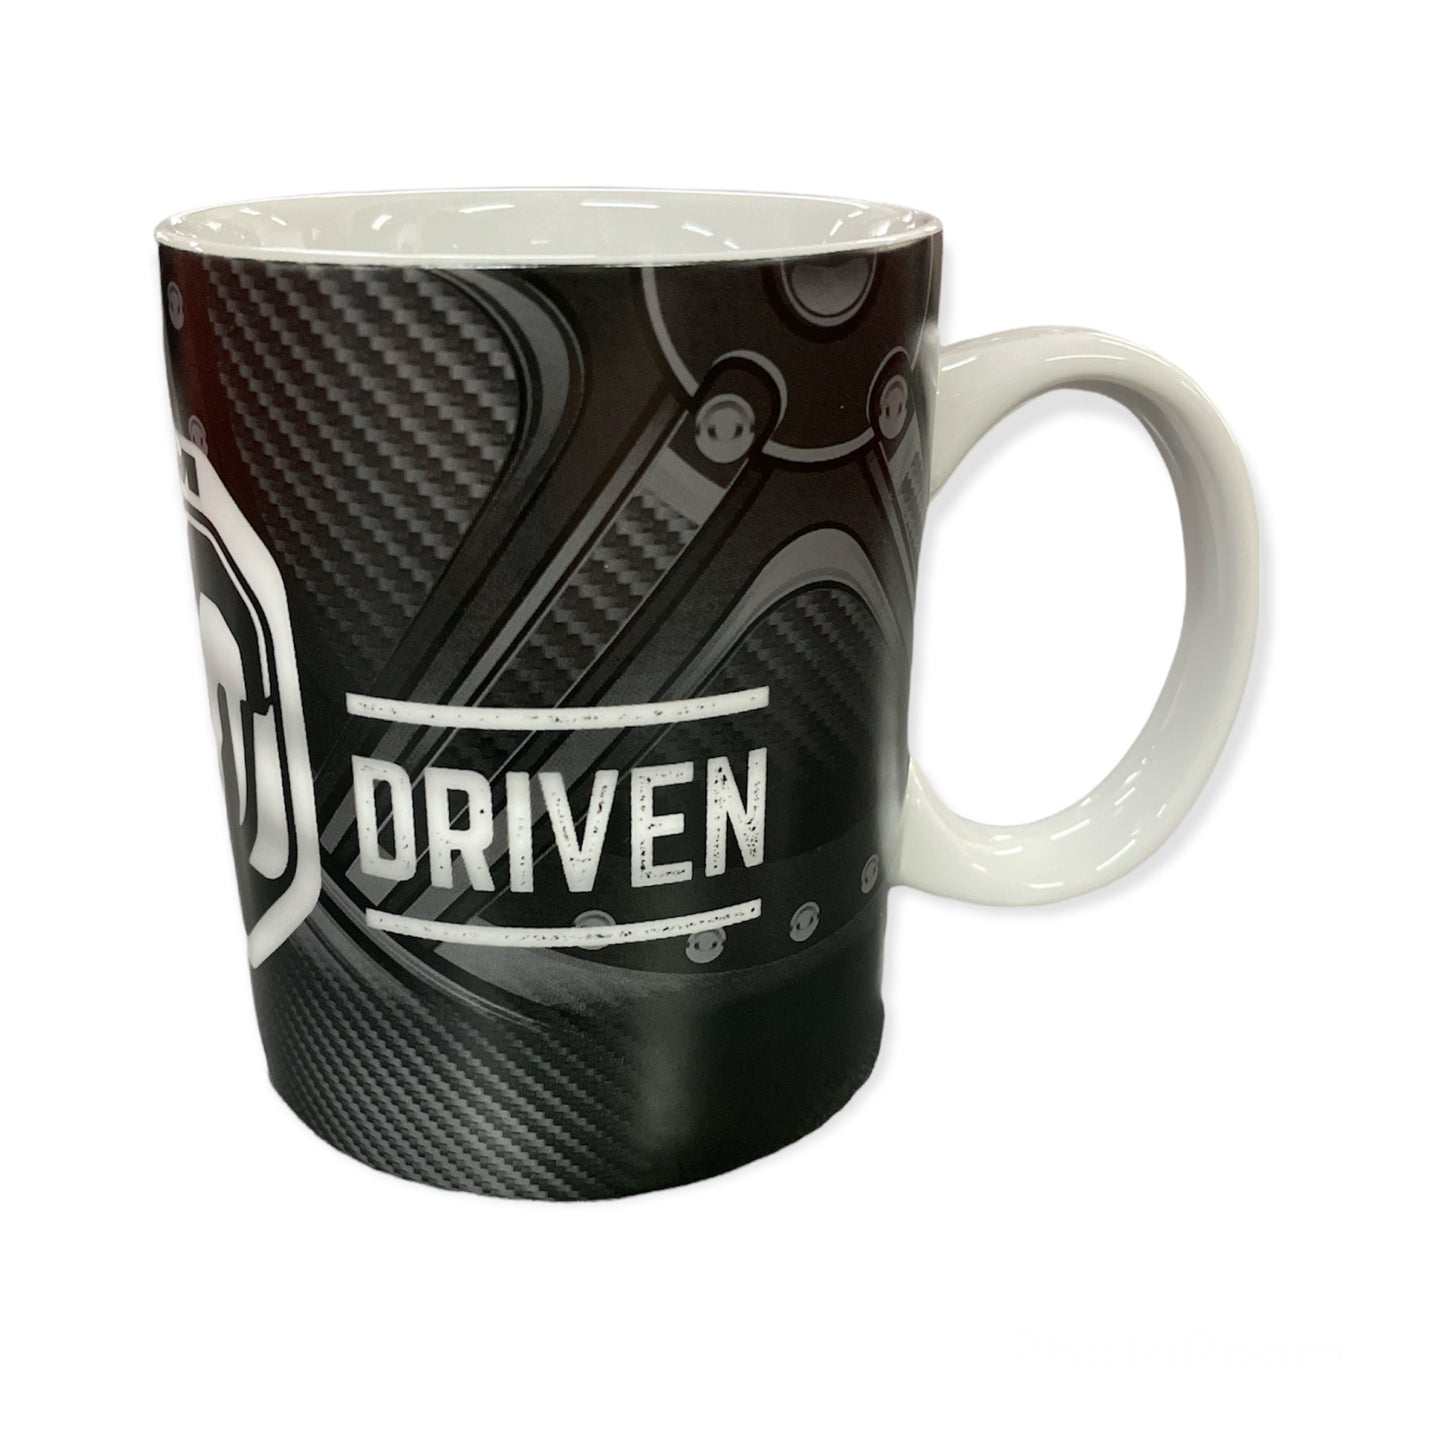 Dodge RAM Kaffeetasse Tasse Mug mit Dodge RAM Motiv "Power Driven"